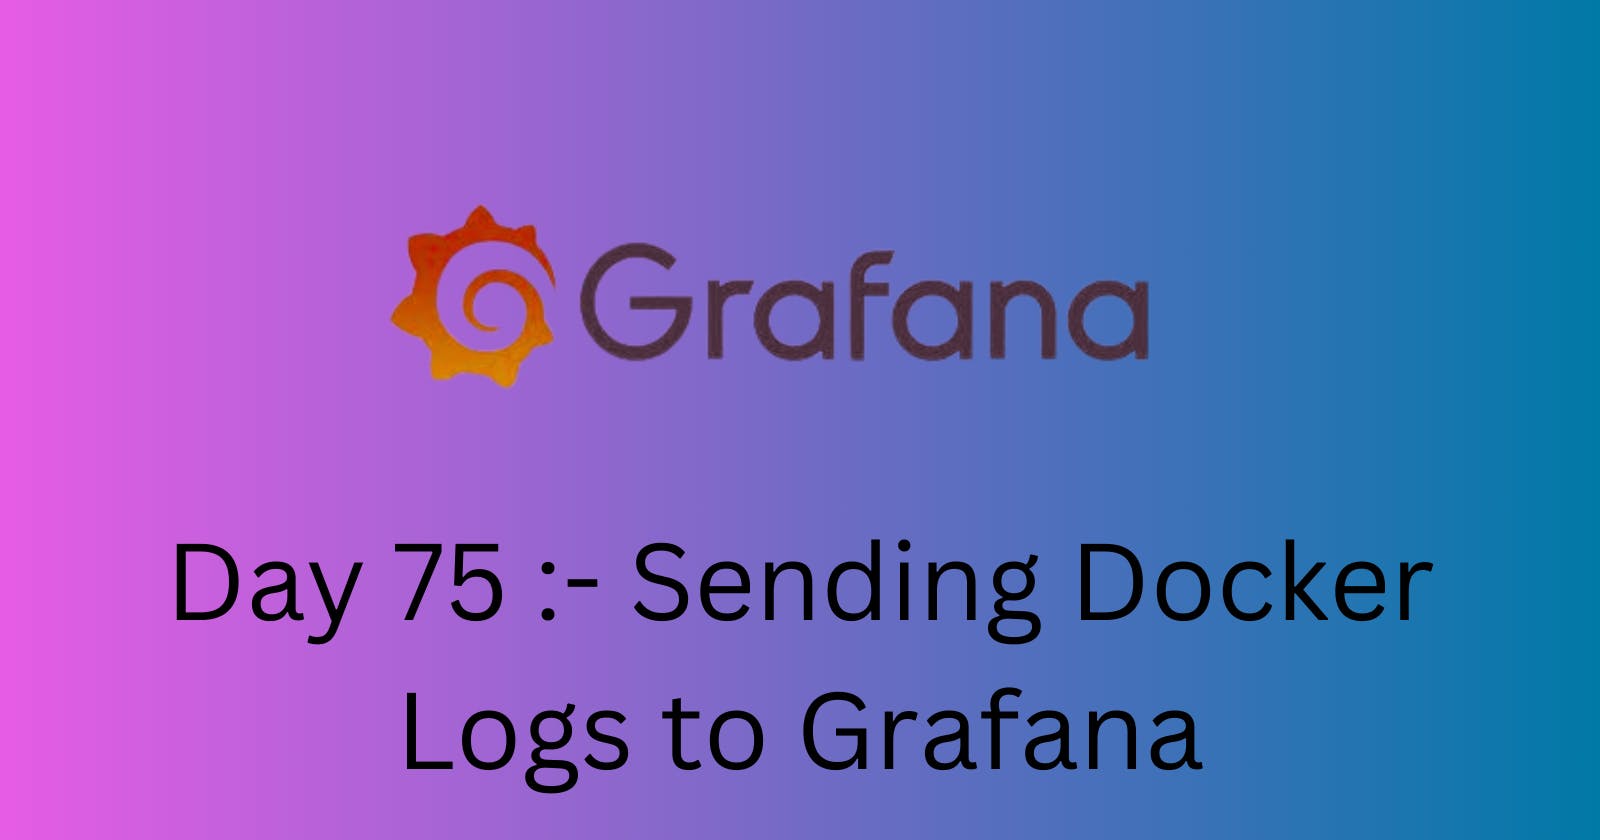 Sending Docker Logs to Grafana